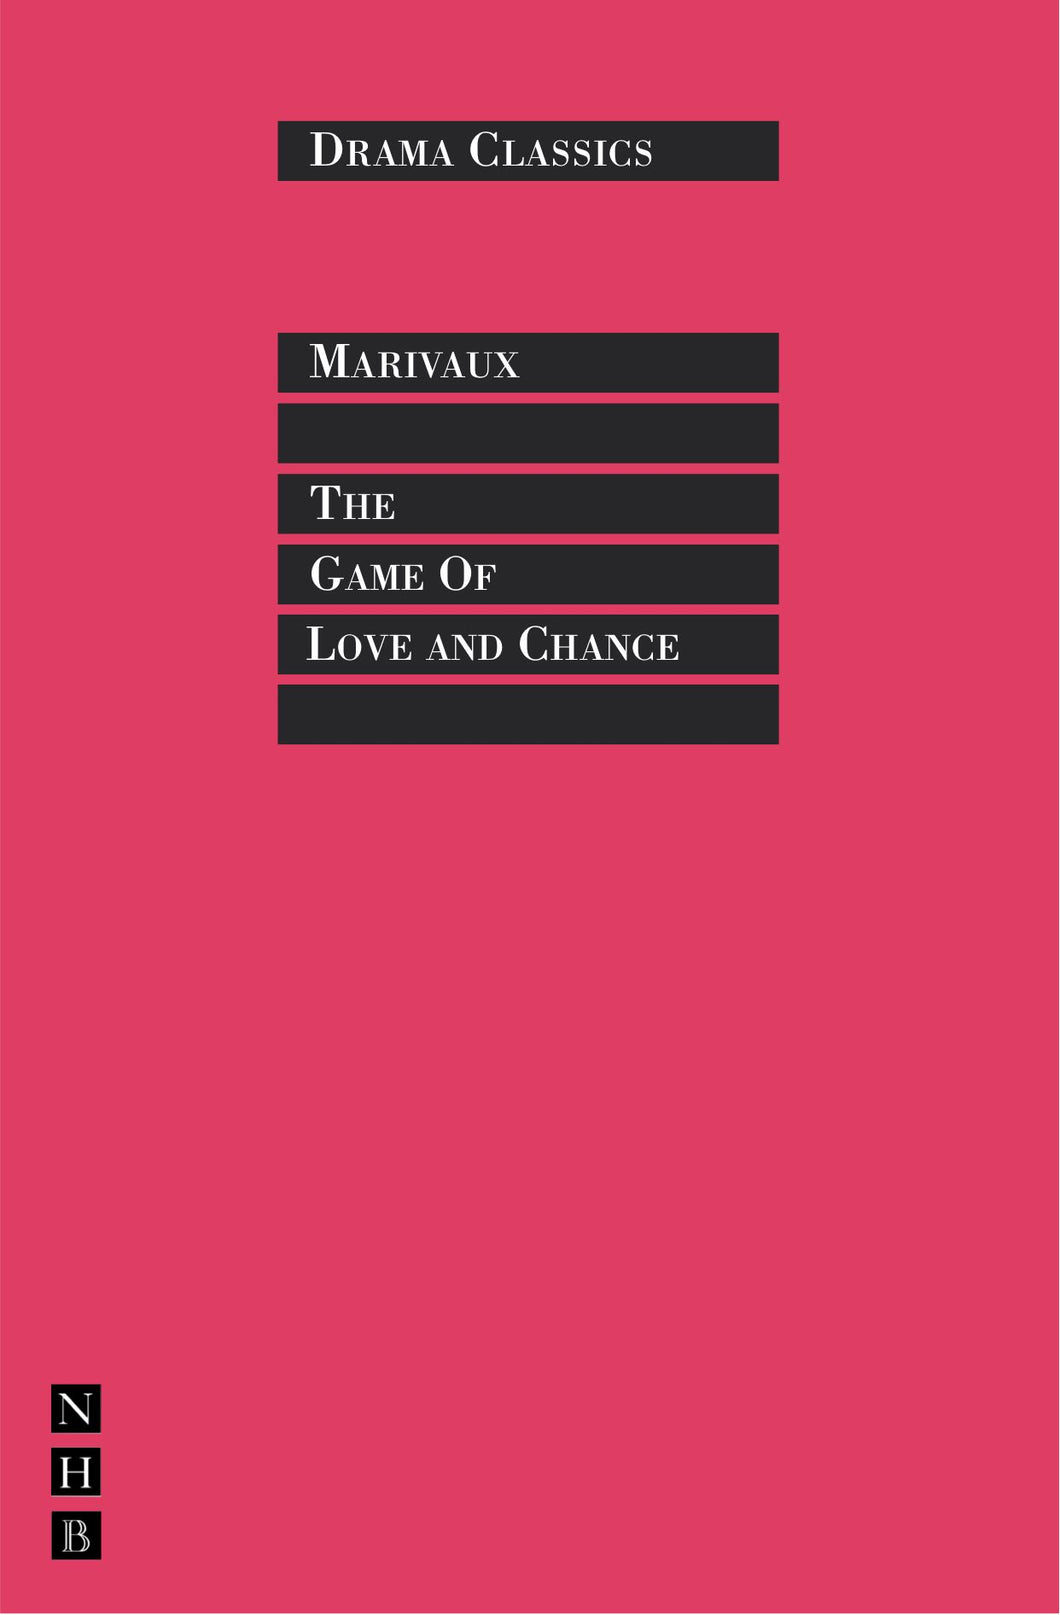 The Game Of Love And Chance ร้านหนังสือและสิ่งของ เป็นร้านหนังสือภาษาอังกฤษหายาก และร้านกาแฟ หรือ บุ๊คคาเฟ่ ตั้งอยู่สุขุมวิท กรุงเทพ